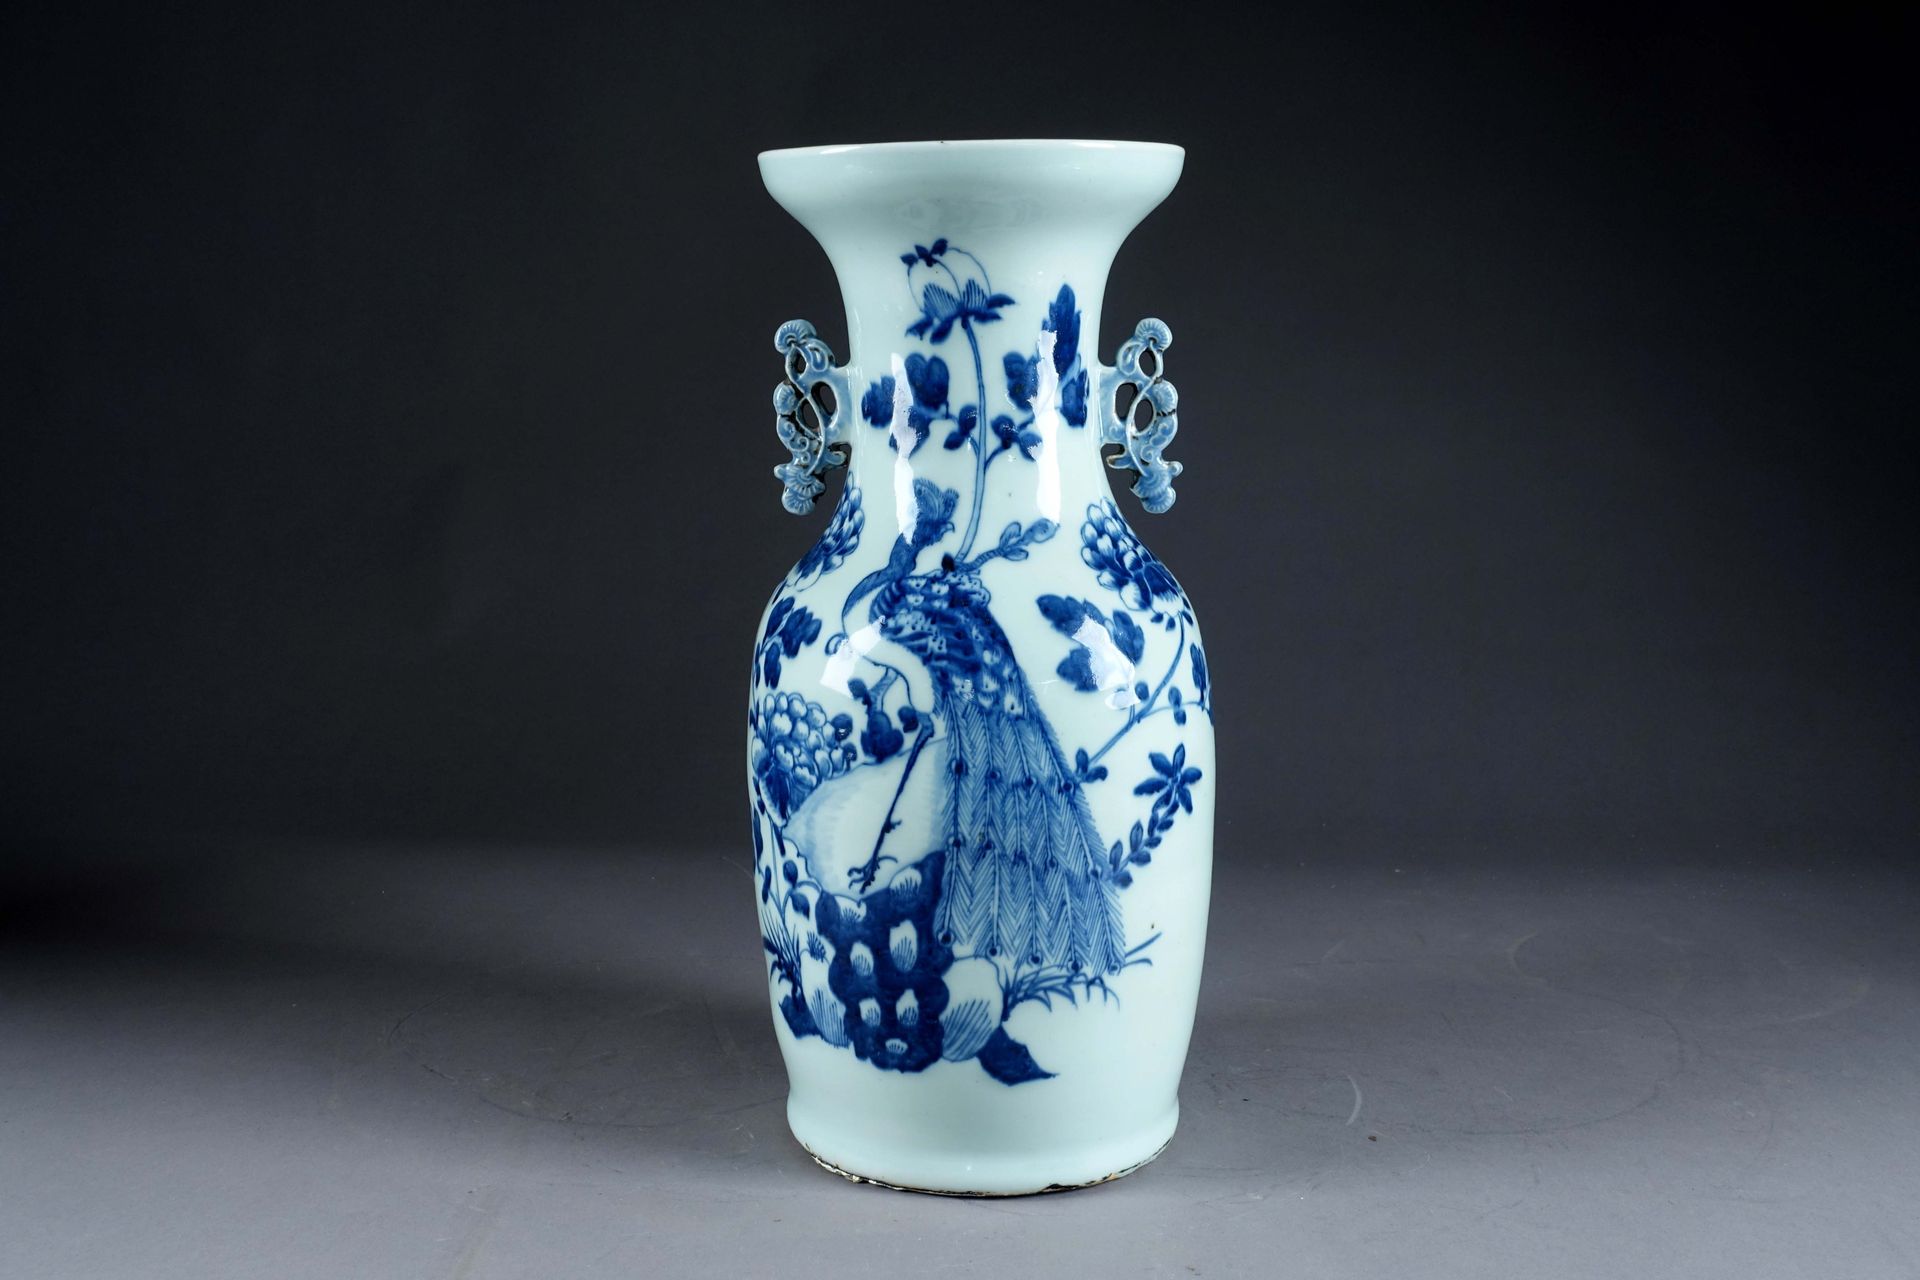 CHINE. 阳台花瓶，有松树枝形的镂空把手。白底蓝色珐琅彩装饰的岩石上的孔雀。19世纪末的瓷器。高度：43厘米。状态：底部有穿孔。